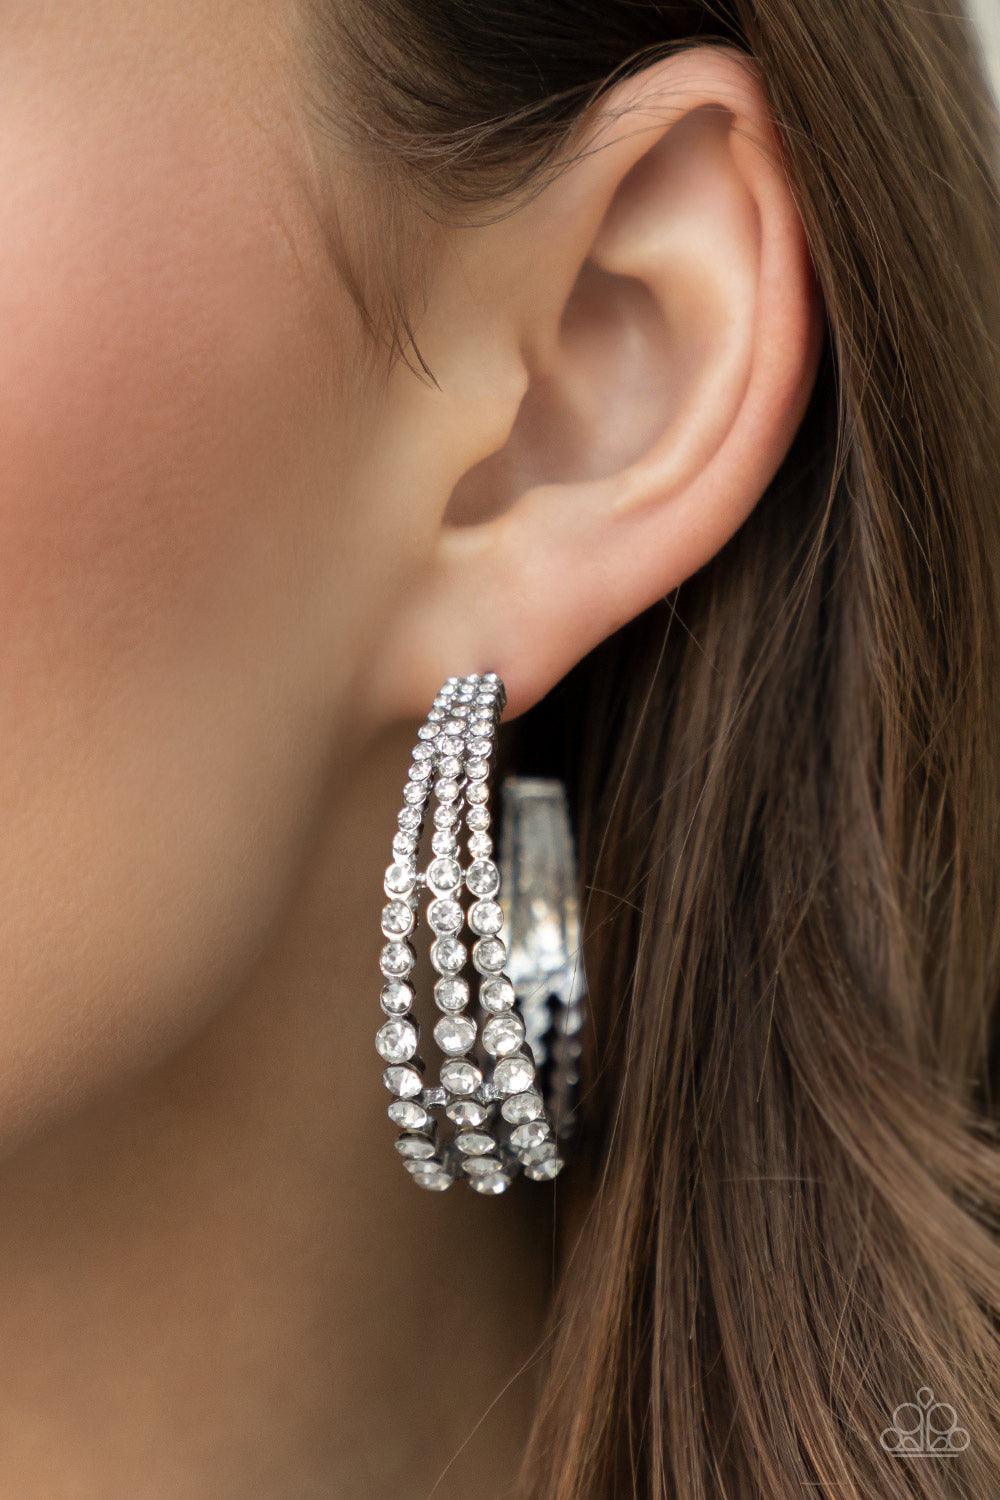 Cosmopolitan Cool White Earrings - Jewelry by Bretta